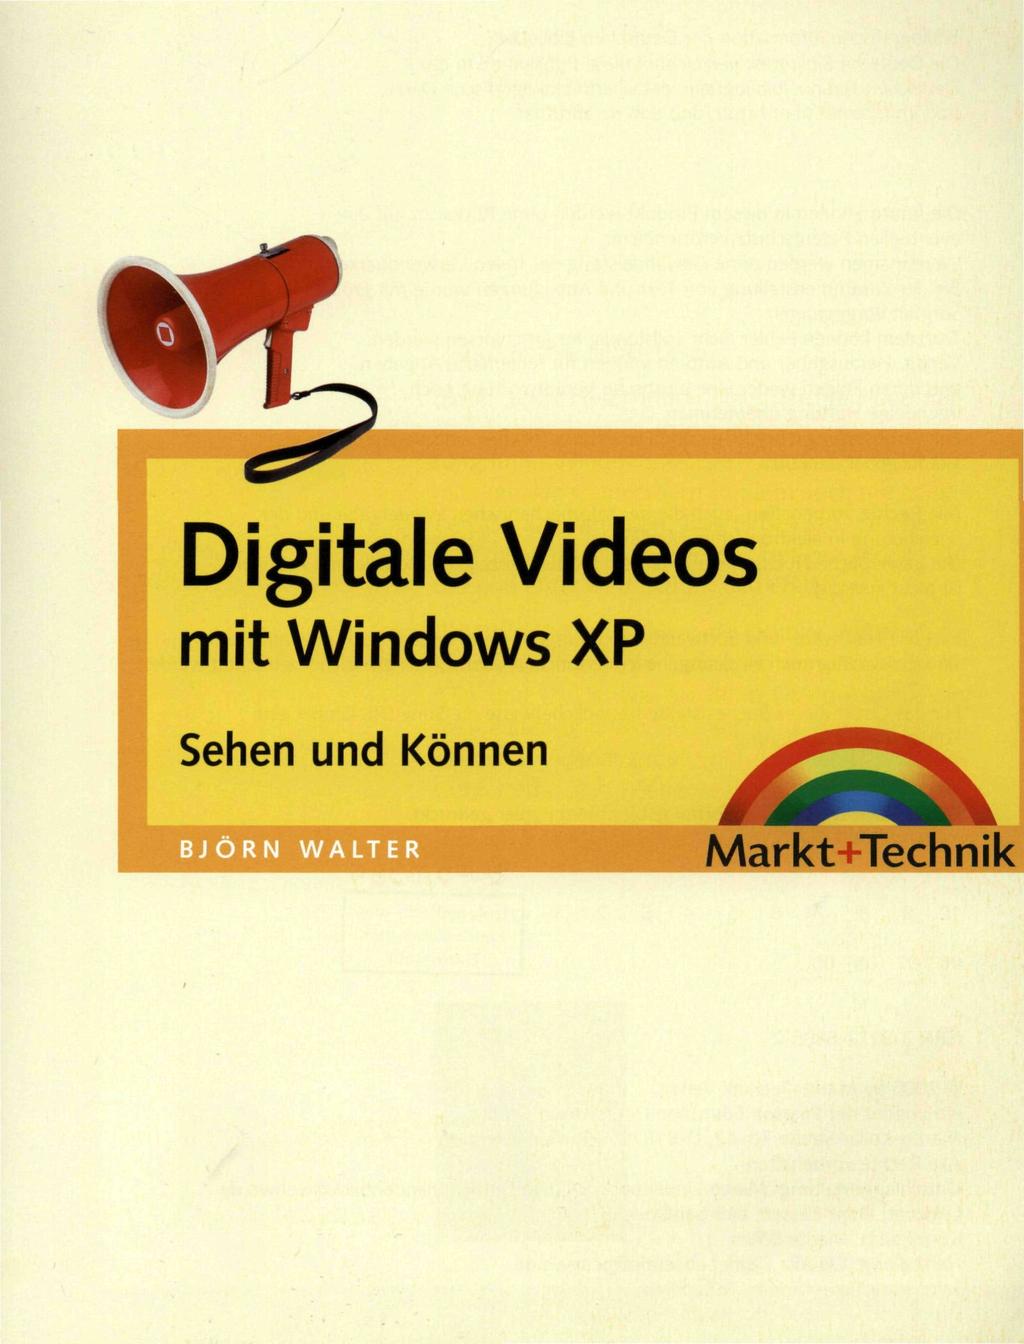 Digitale Videos mit Windows XP Sehen